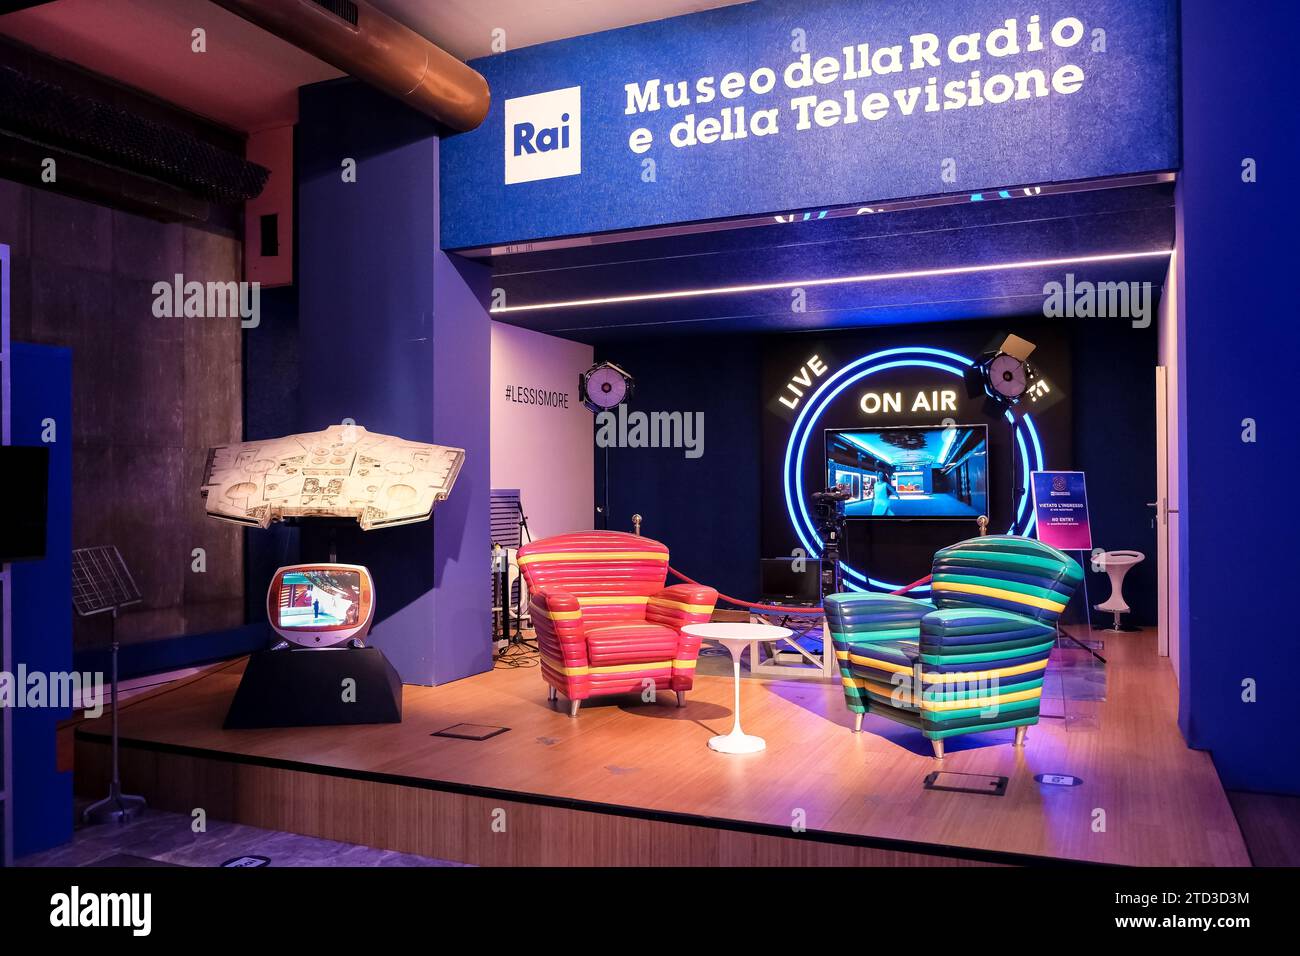 Attrezzature da studio esposte presso il Museo della radio e della televisione situato nel centro produttivo Rai nel centro di Torino Foto Stock